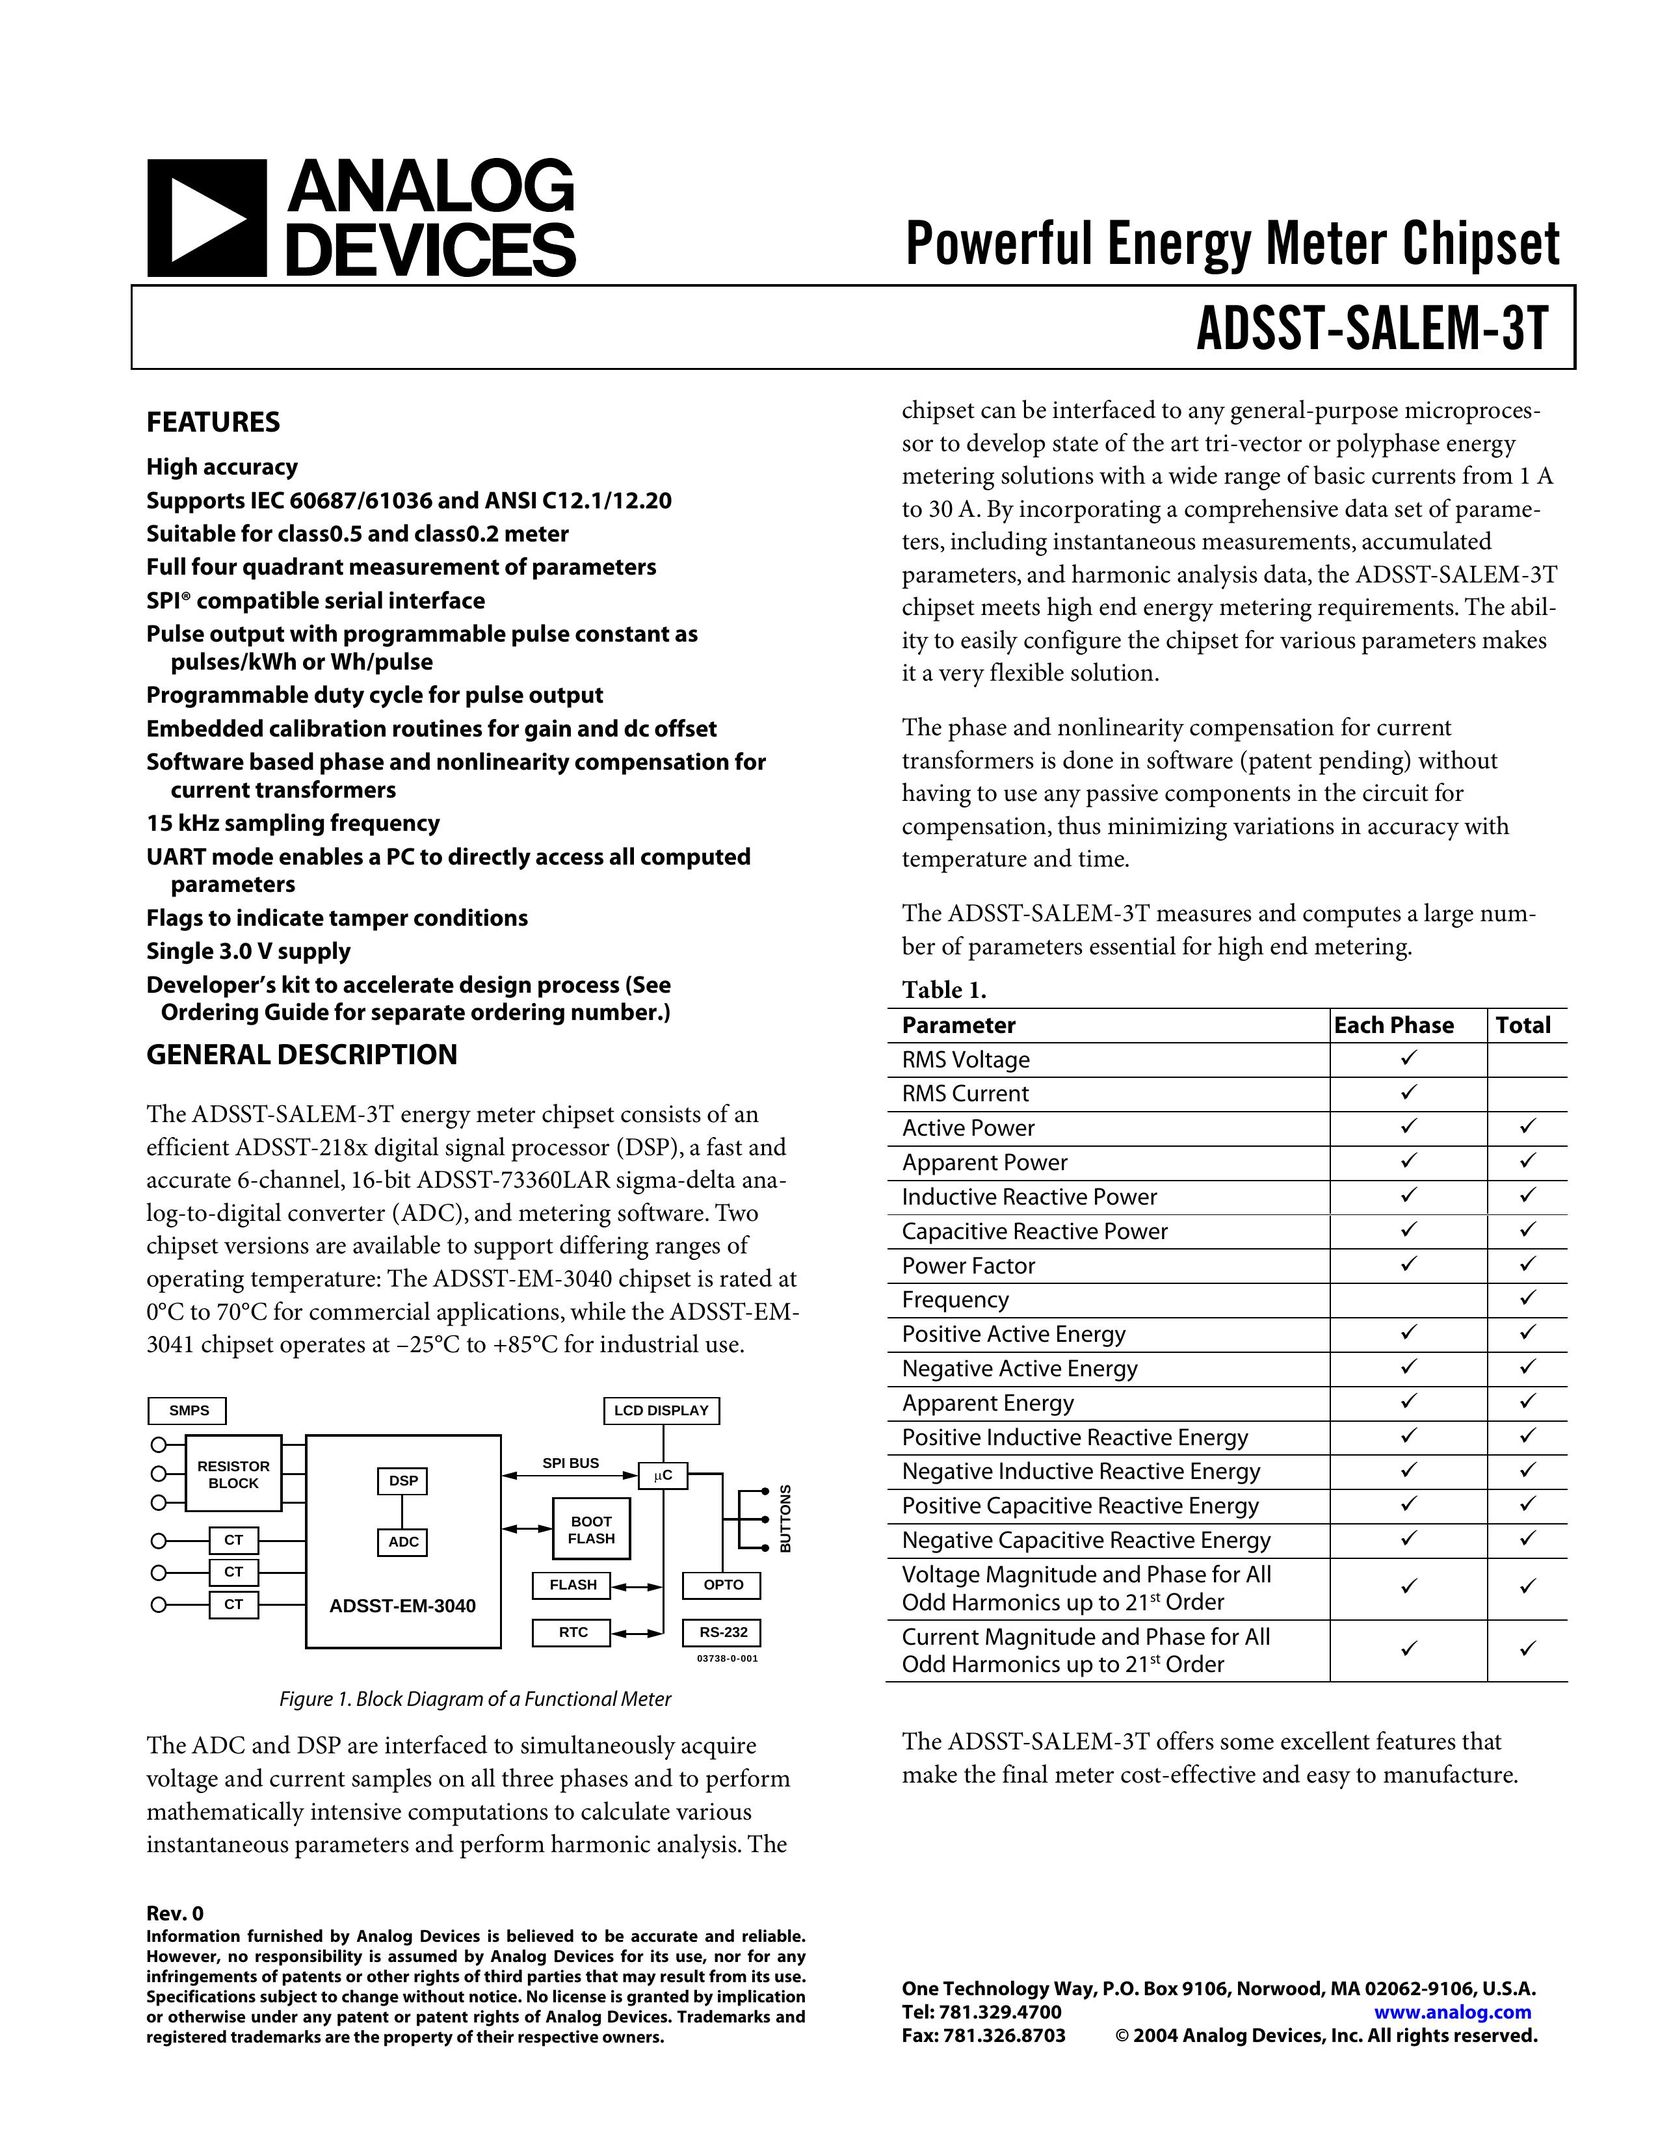 Analog Devices ADSST-EM-3040 Computer Hardware User Manual